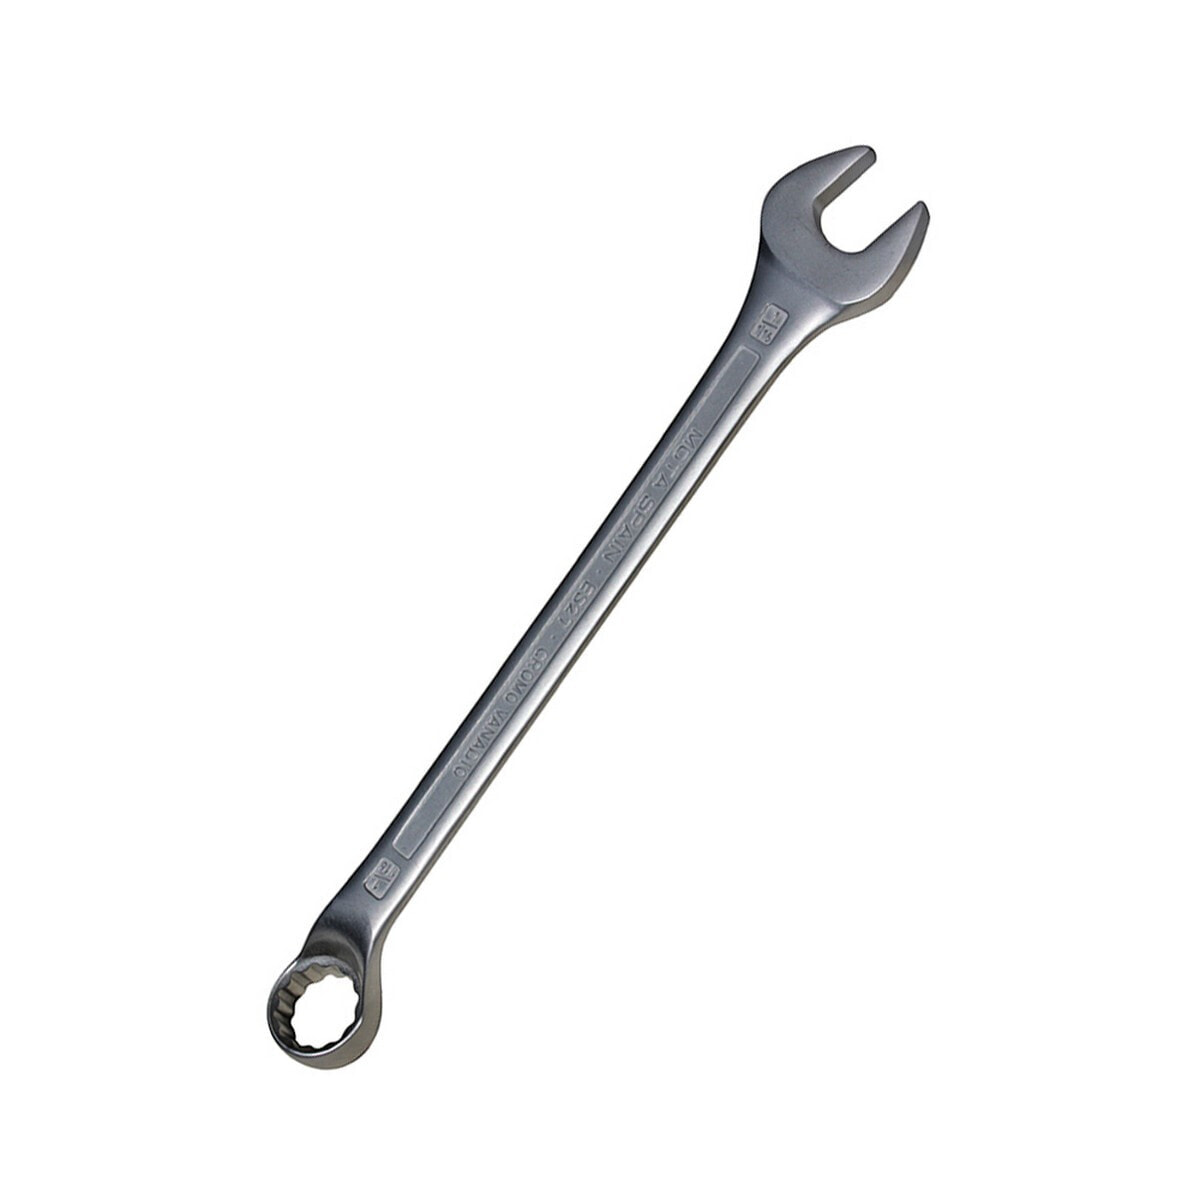 Ключ комбинированный Mota e17 17 mm